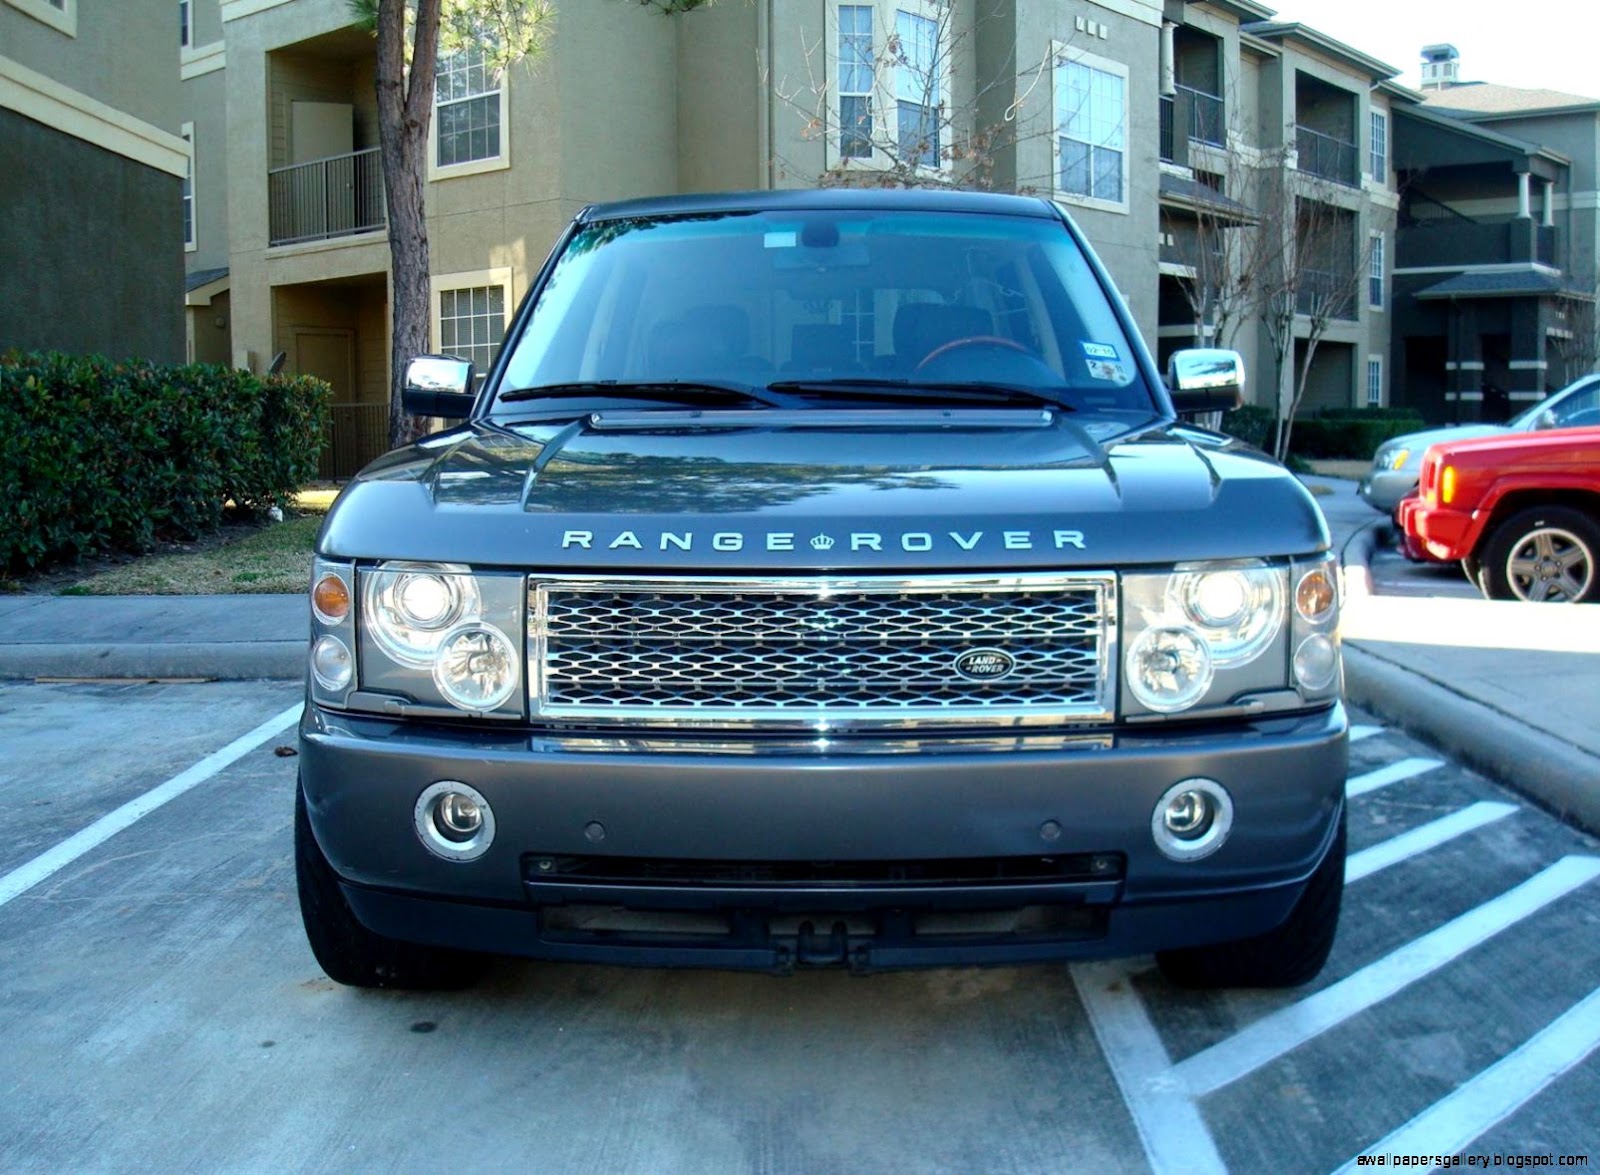 Range Rover Houston